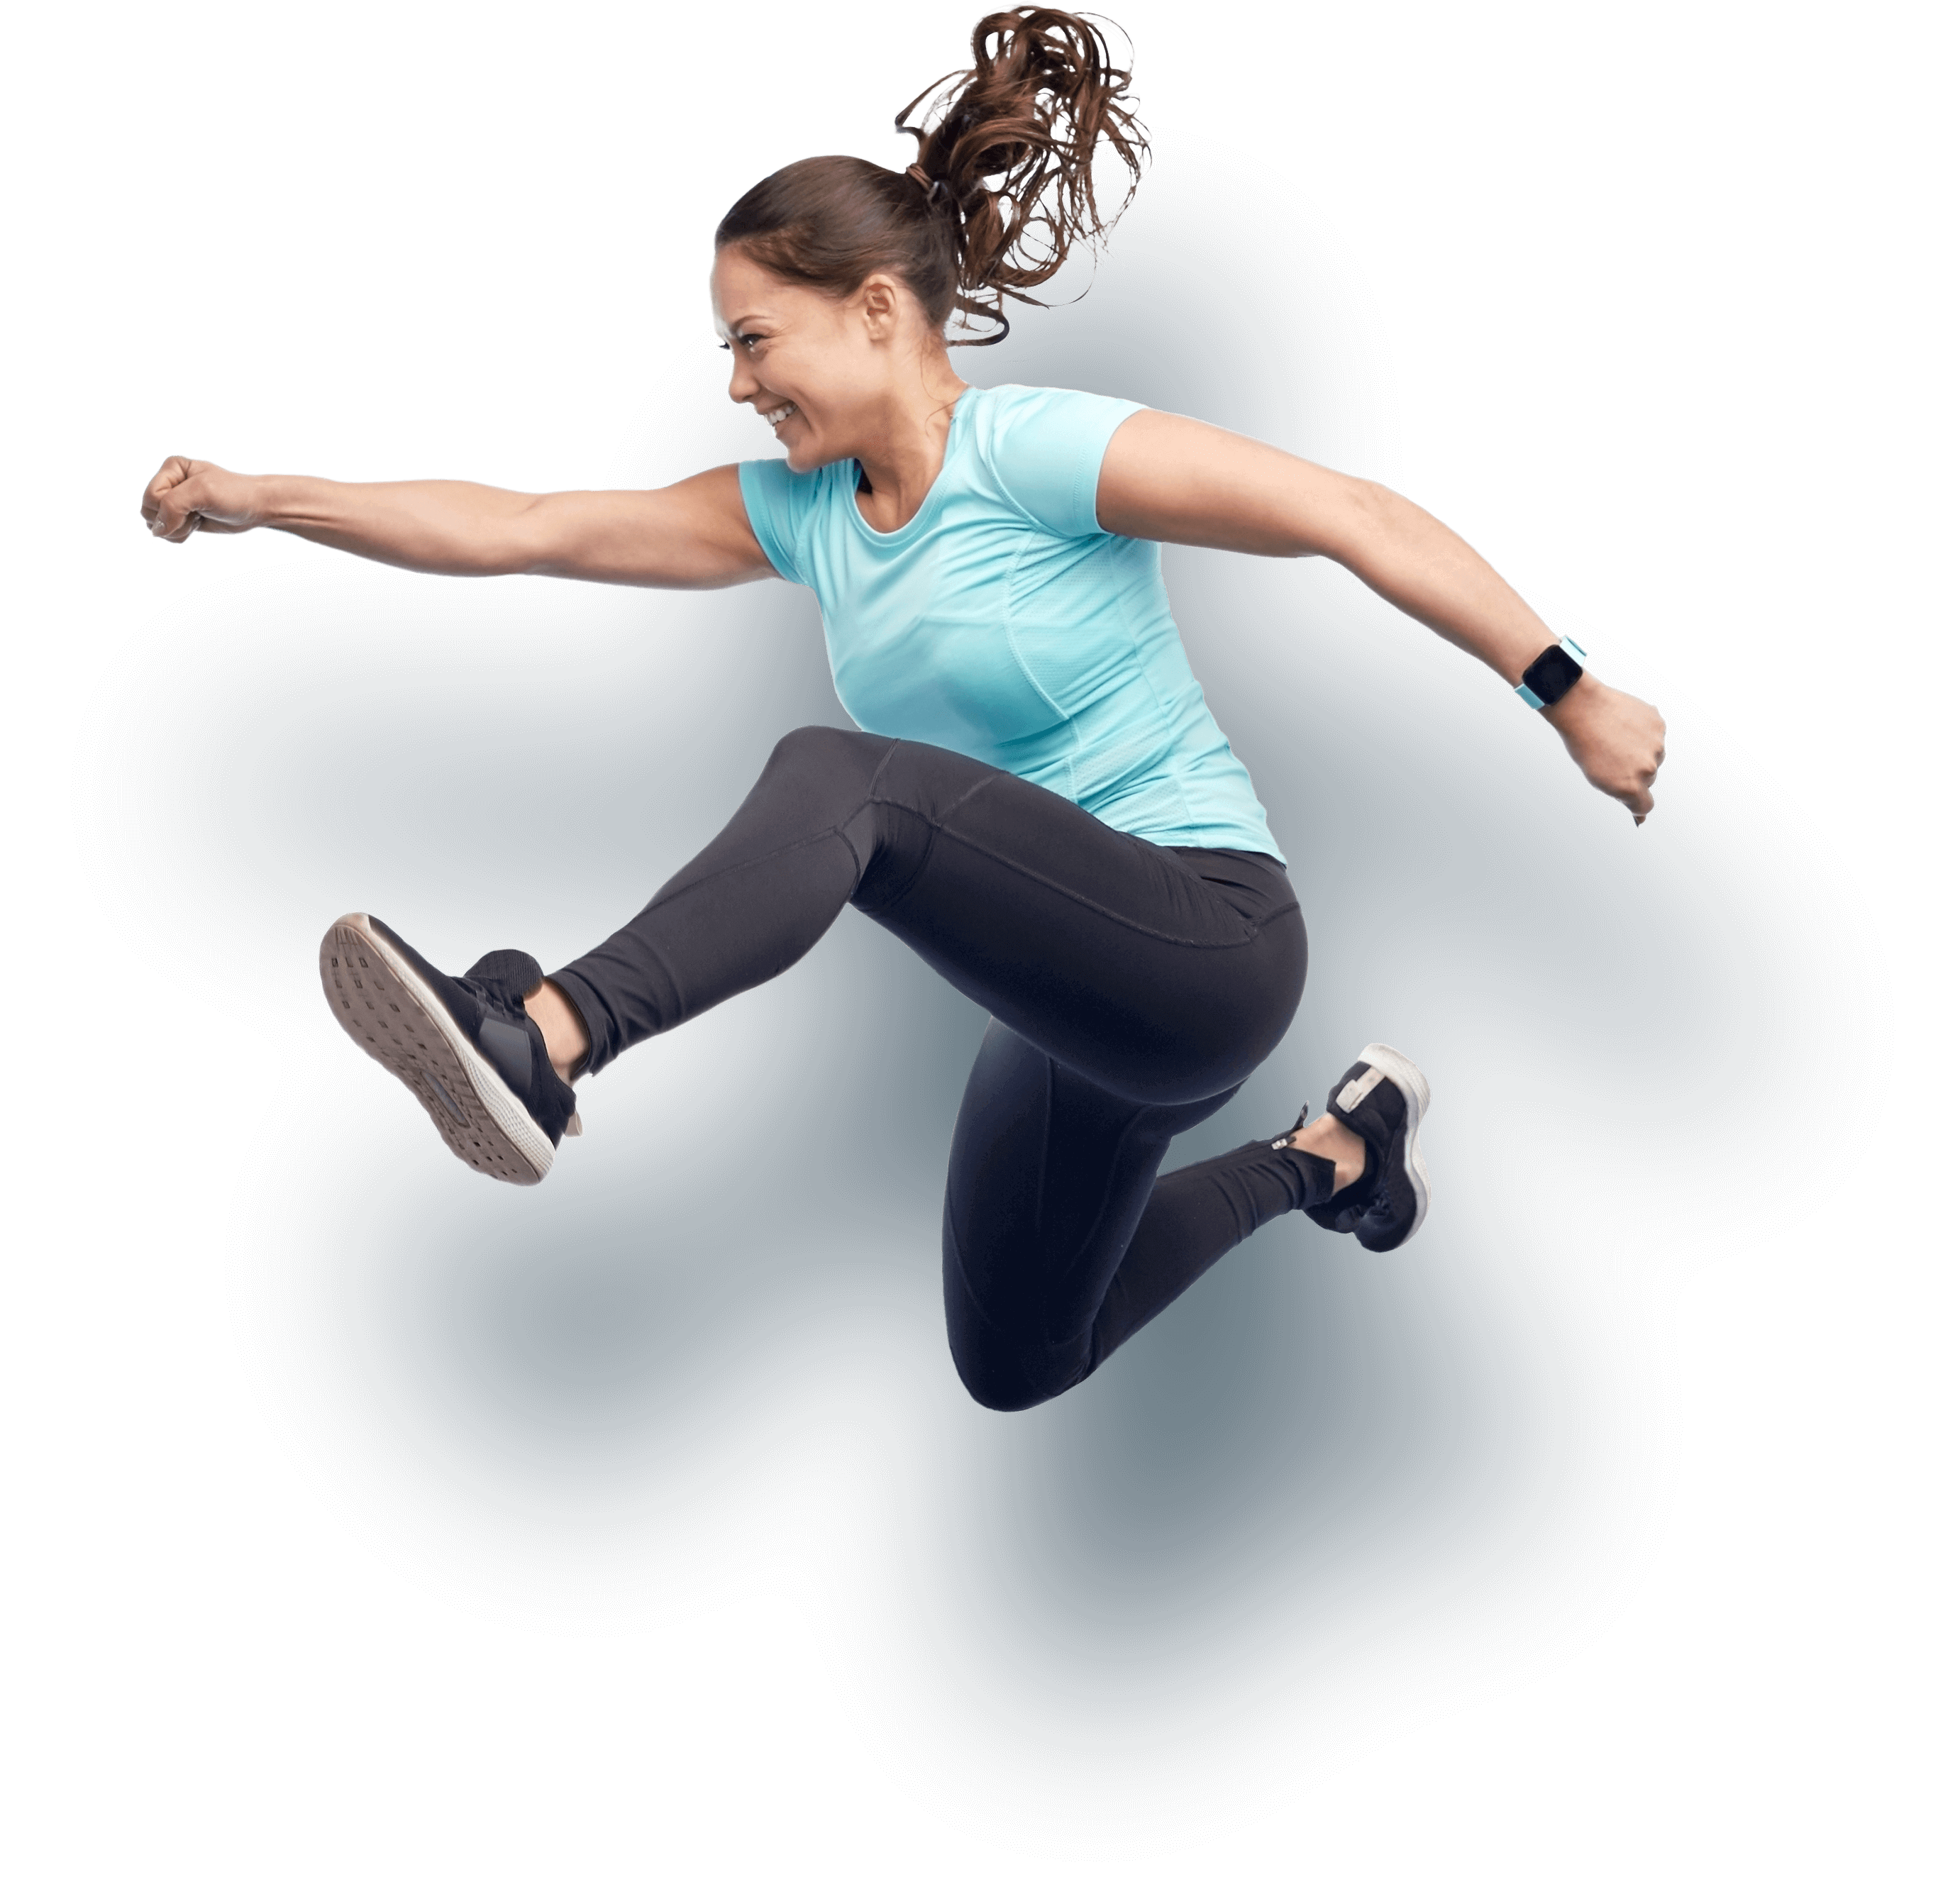 Фитнес девушка в прыжке. Девушка прыгает. Спорт фитнес. В прыжке. Jumping wear